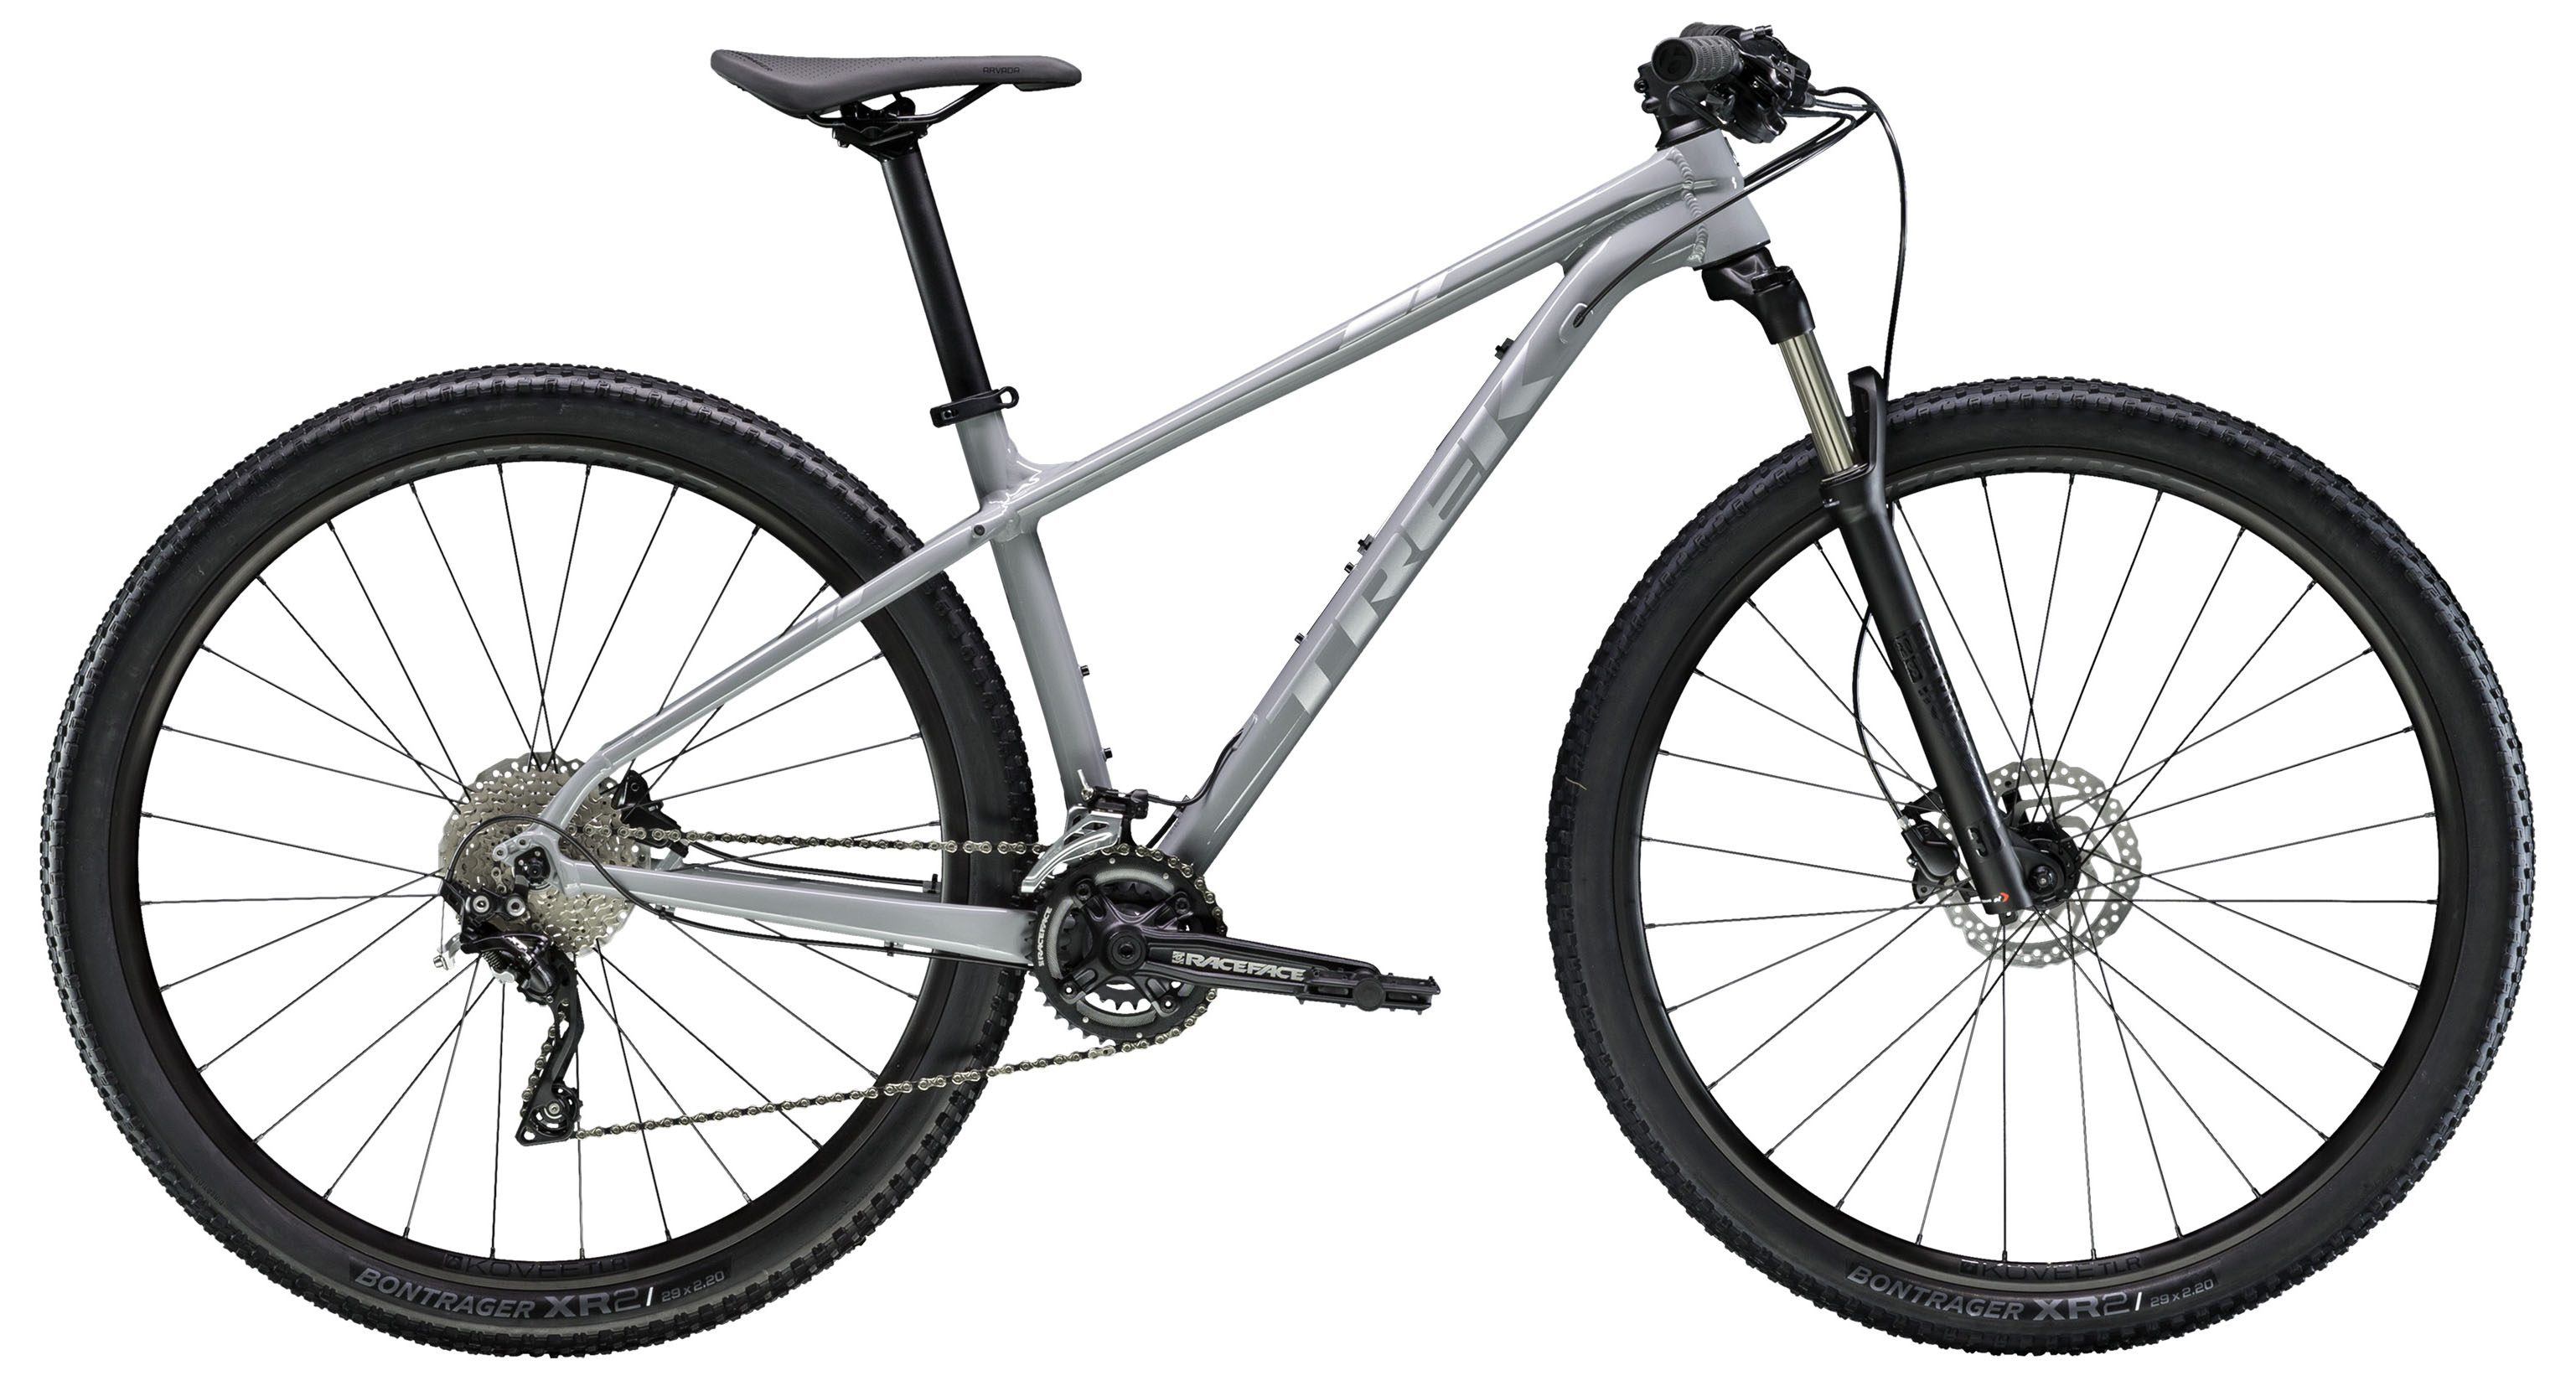  Отзывы о Горном велосипеде Trek X-Caliber 8 27,5 2019